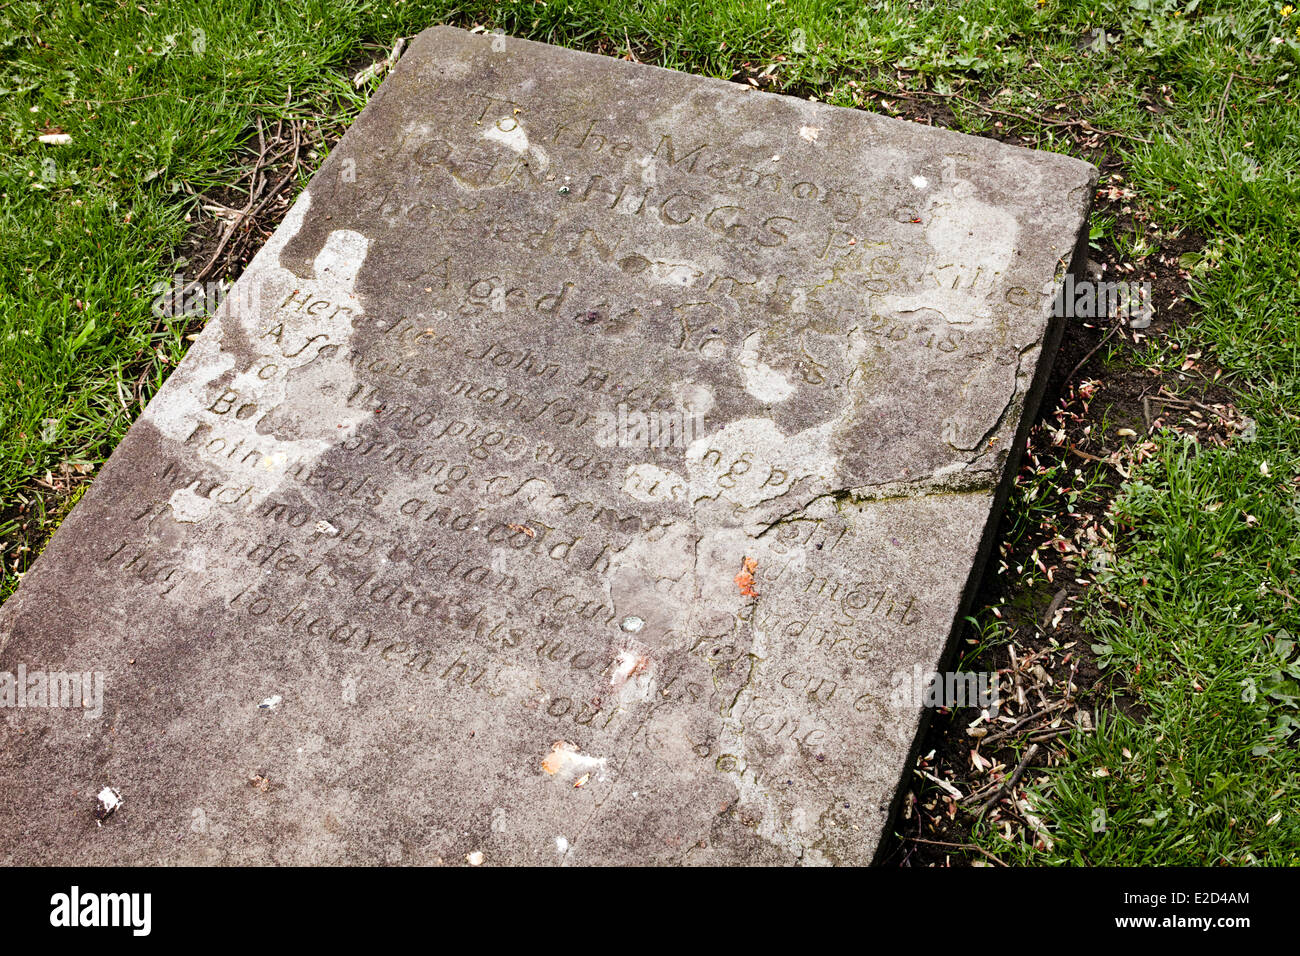 Pierre tombale de John Higgs - Pigkiller (mort en 1825) dans le cimetière de Cheltenham Minster, St Marys, Cheltenham, Gloucestershire Banque D'Images